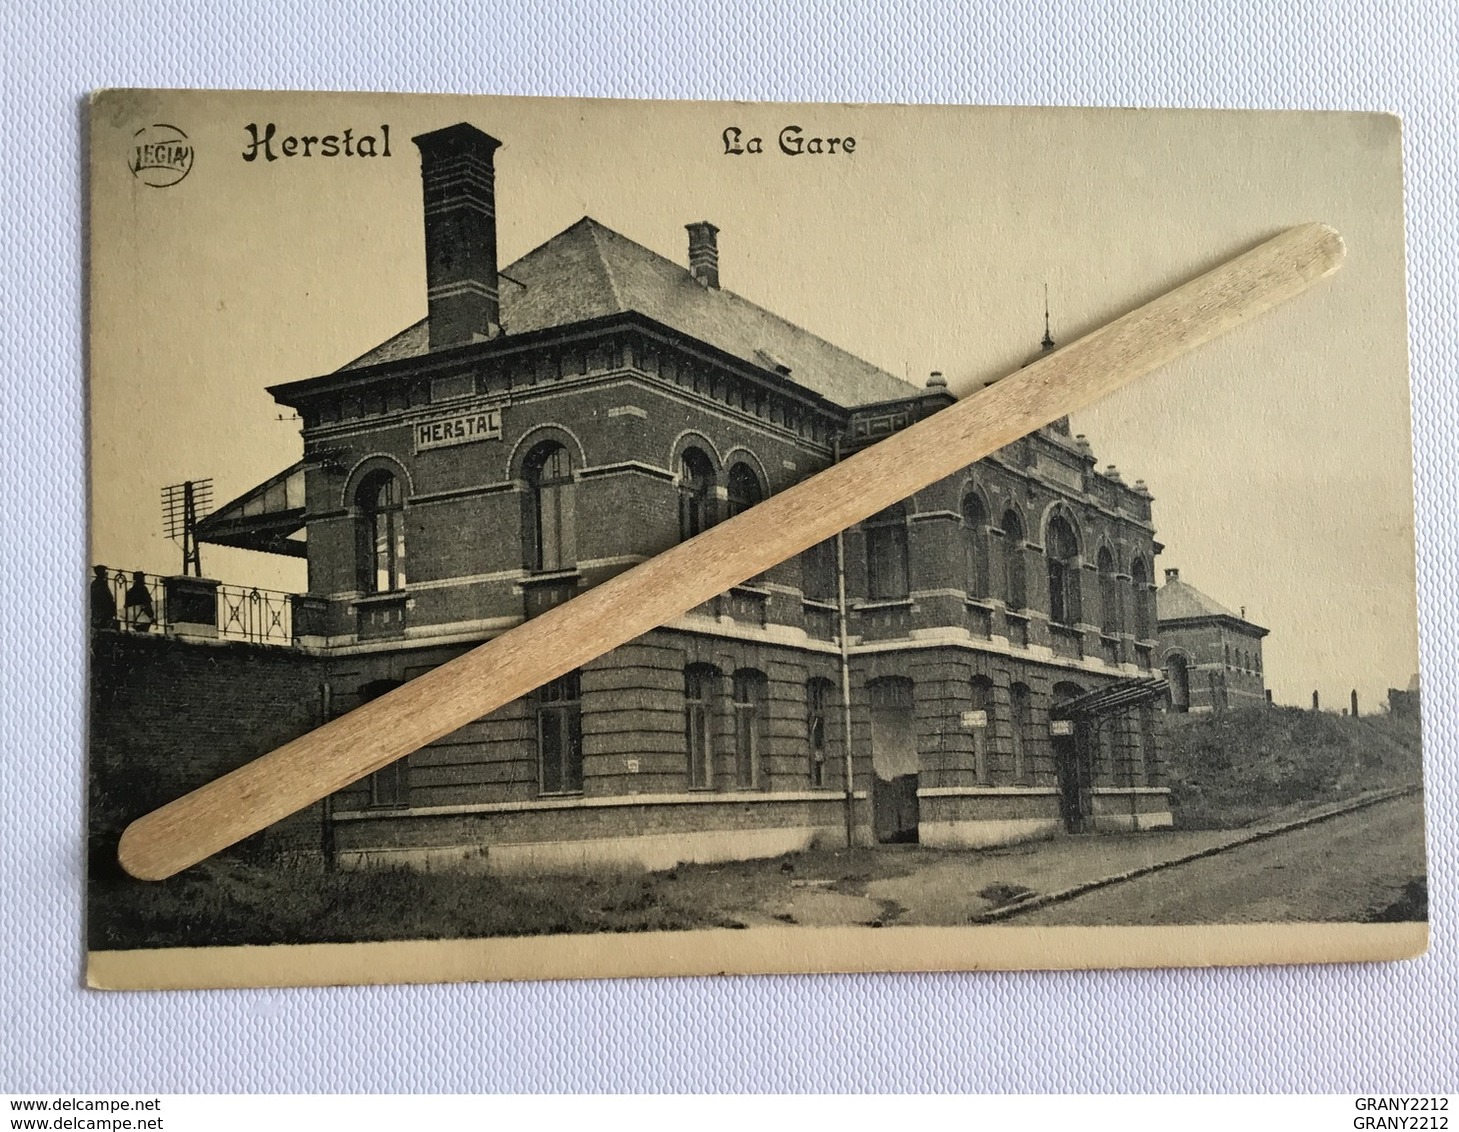 BEAU LOT  DE 20 cartes postales anciennes Belgique  20 scans (1900/1930)